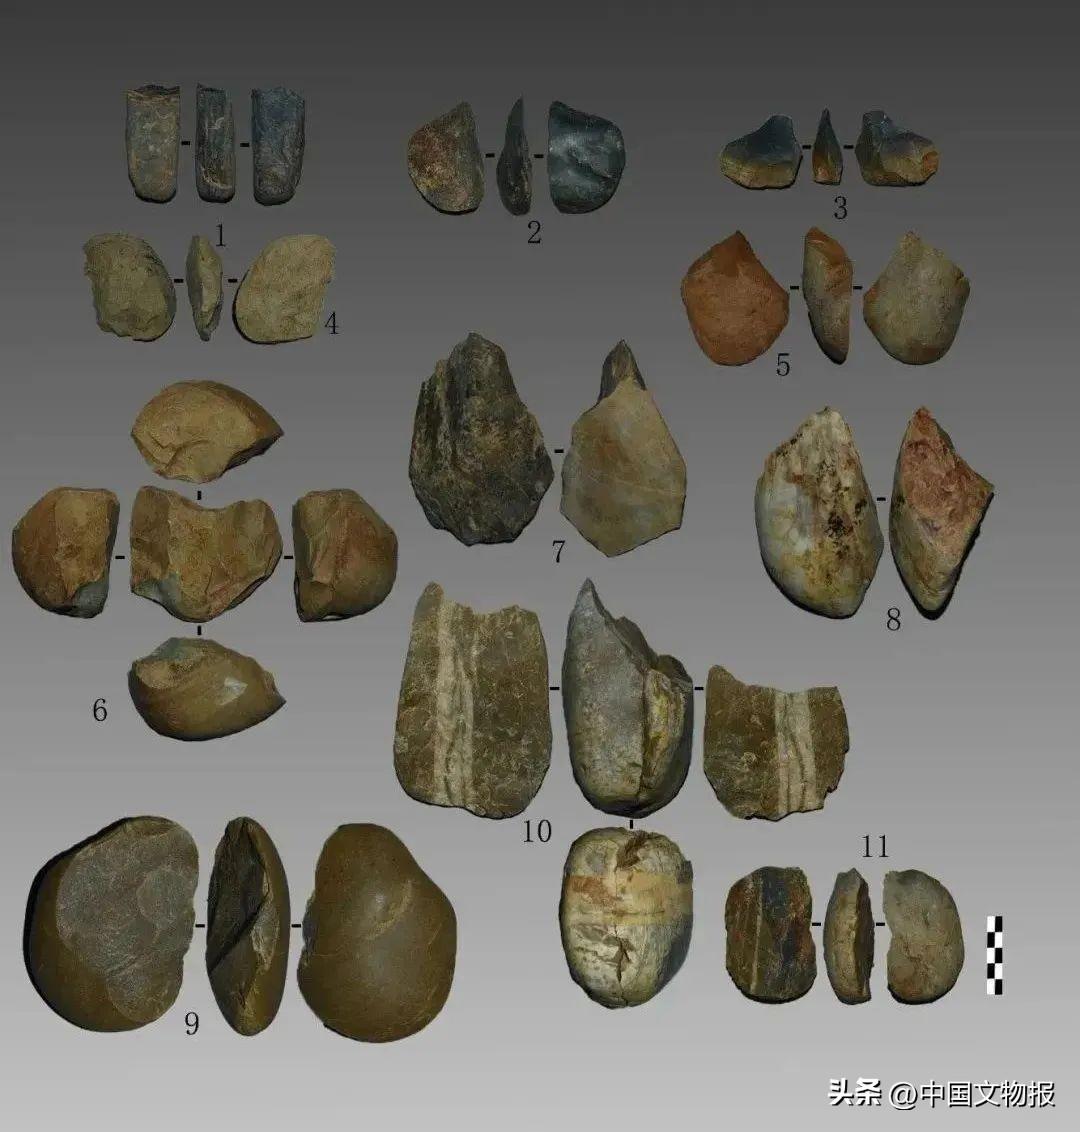 新发现 | 湖南常德黄土山旧石器遗址发掘收获